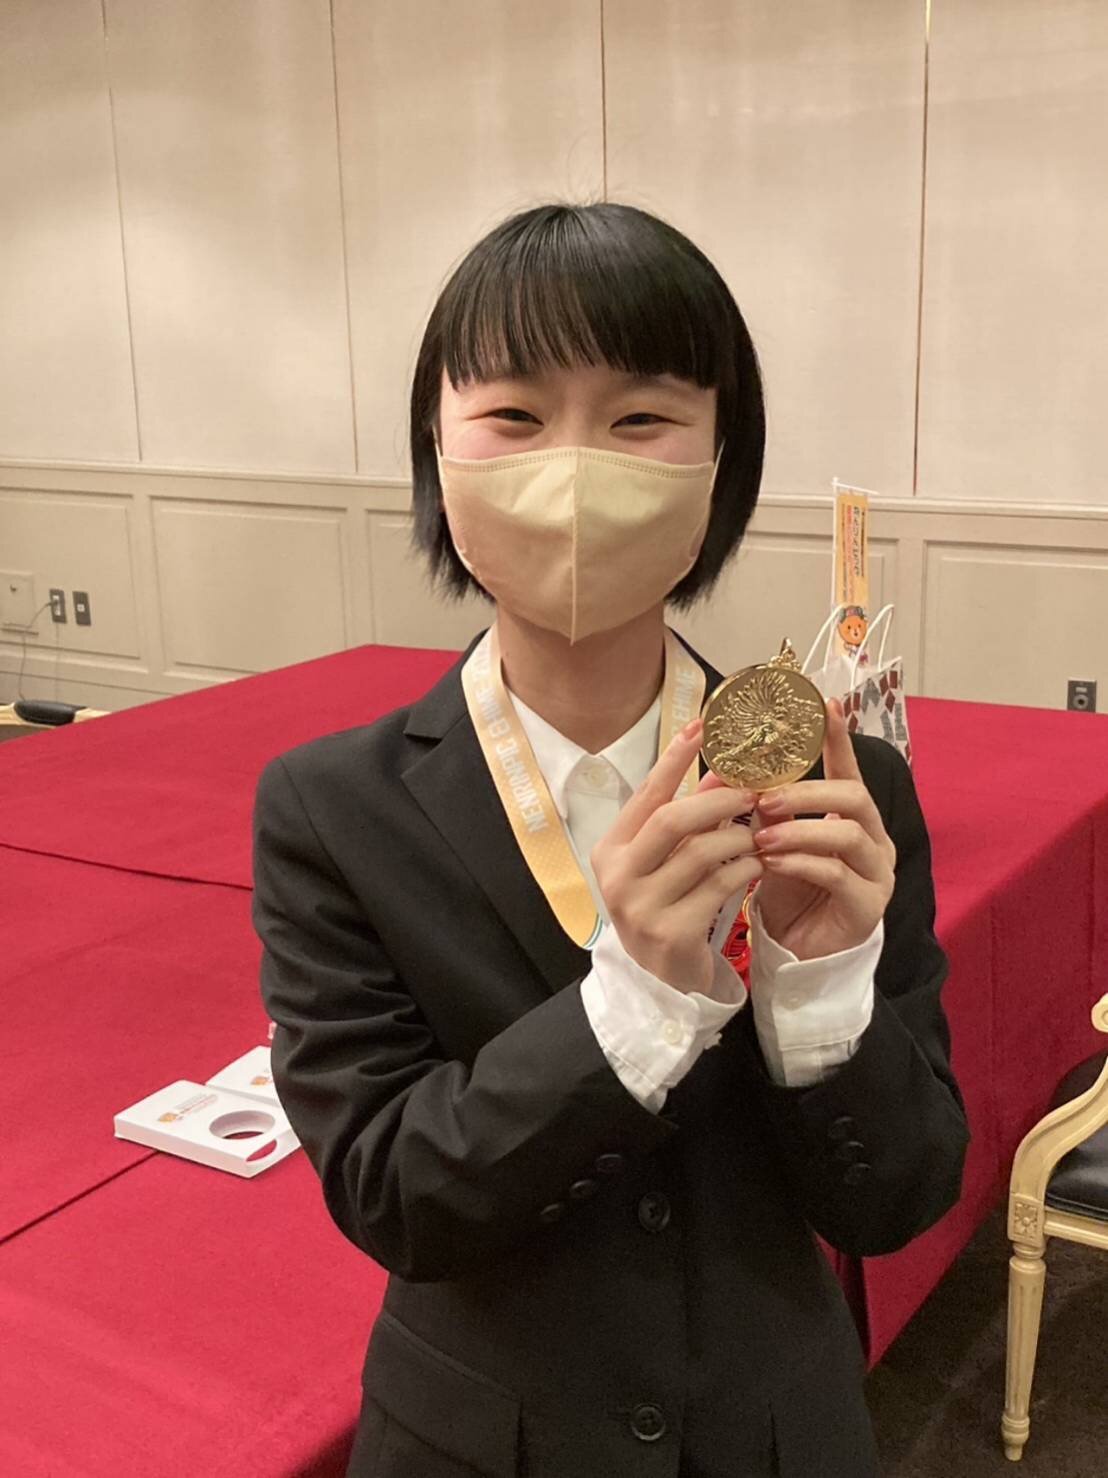 ねんりんピック愛媛大会のメダルに芸術学部1年檜垣さんのデザイン